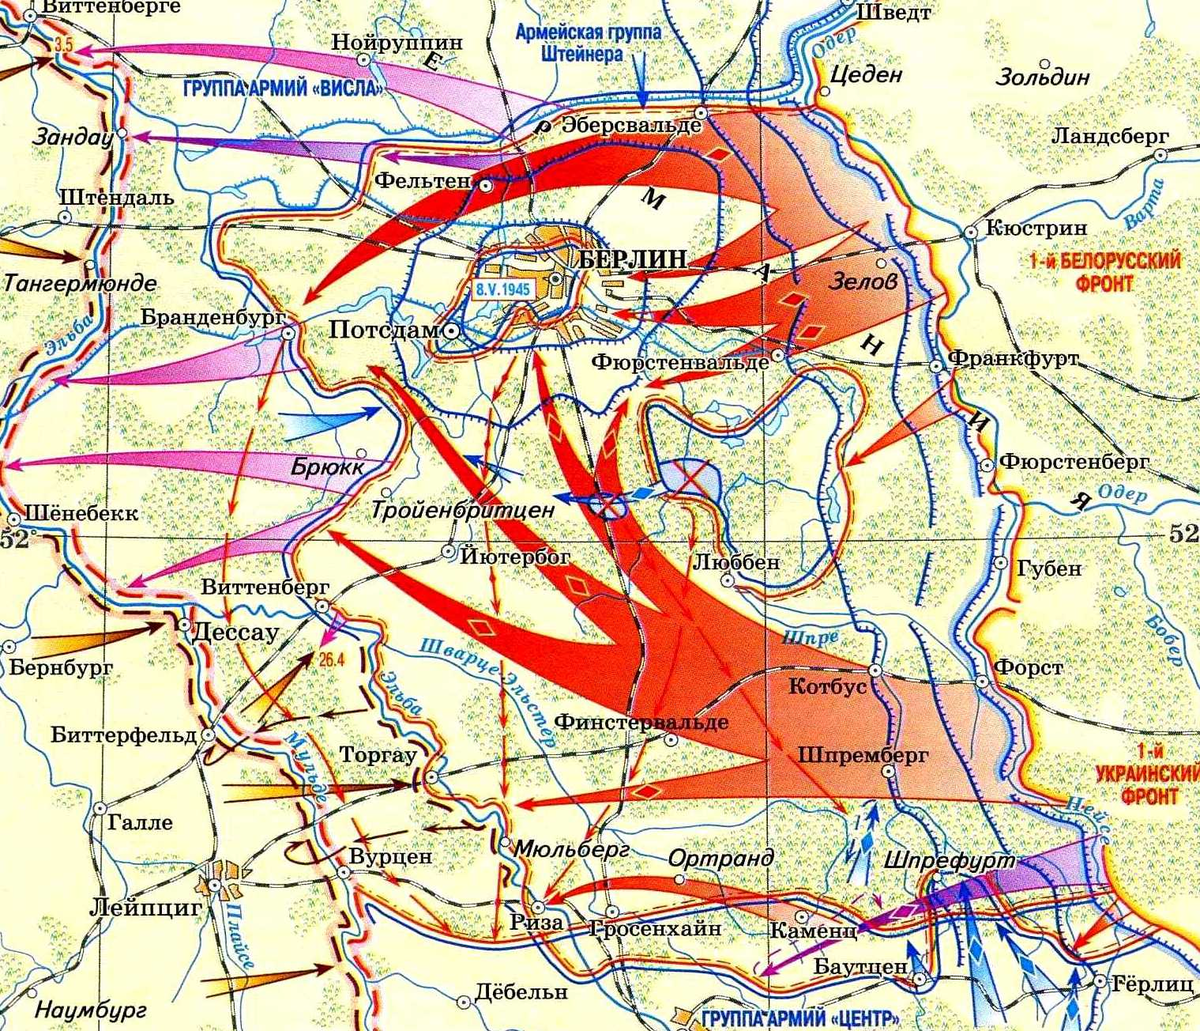 Берлинская стратегическая наступательная операция 1945